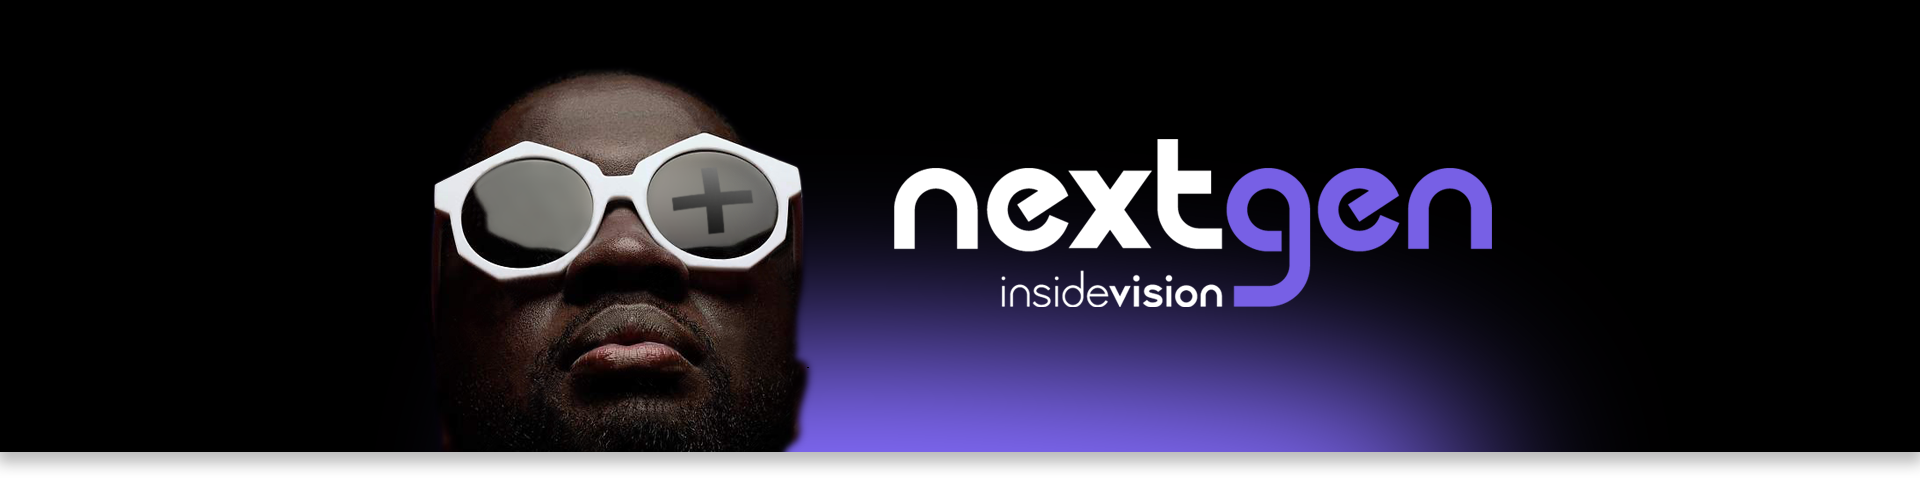 NextGen - it's here! Available immediately - insideONE+